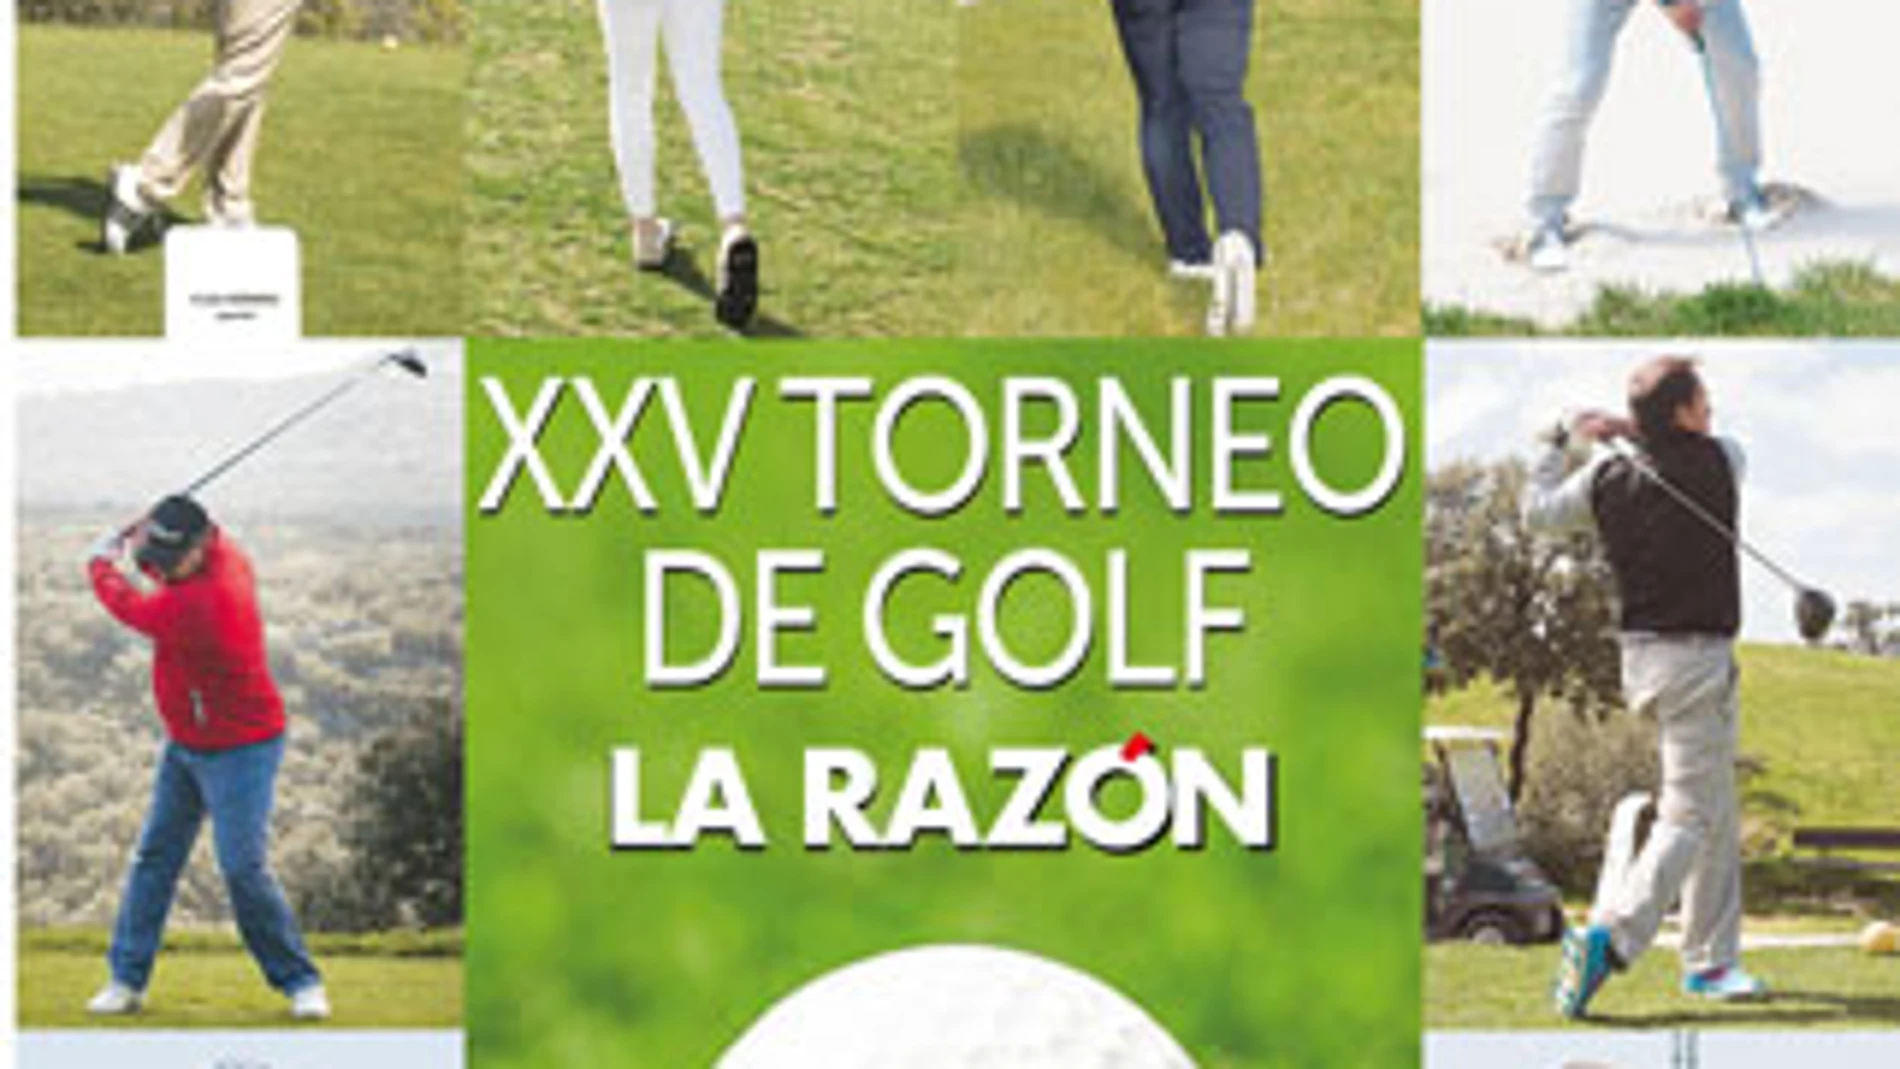 XXV Torneo de Golf La Razón